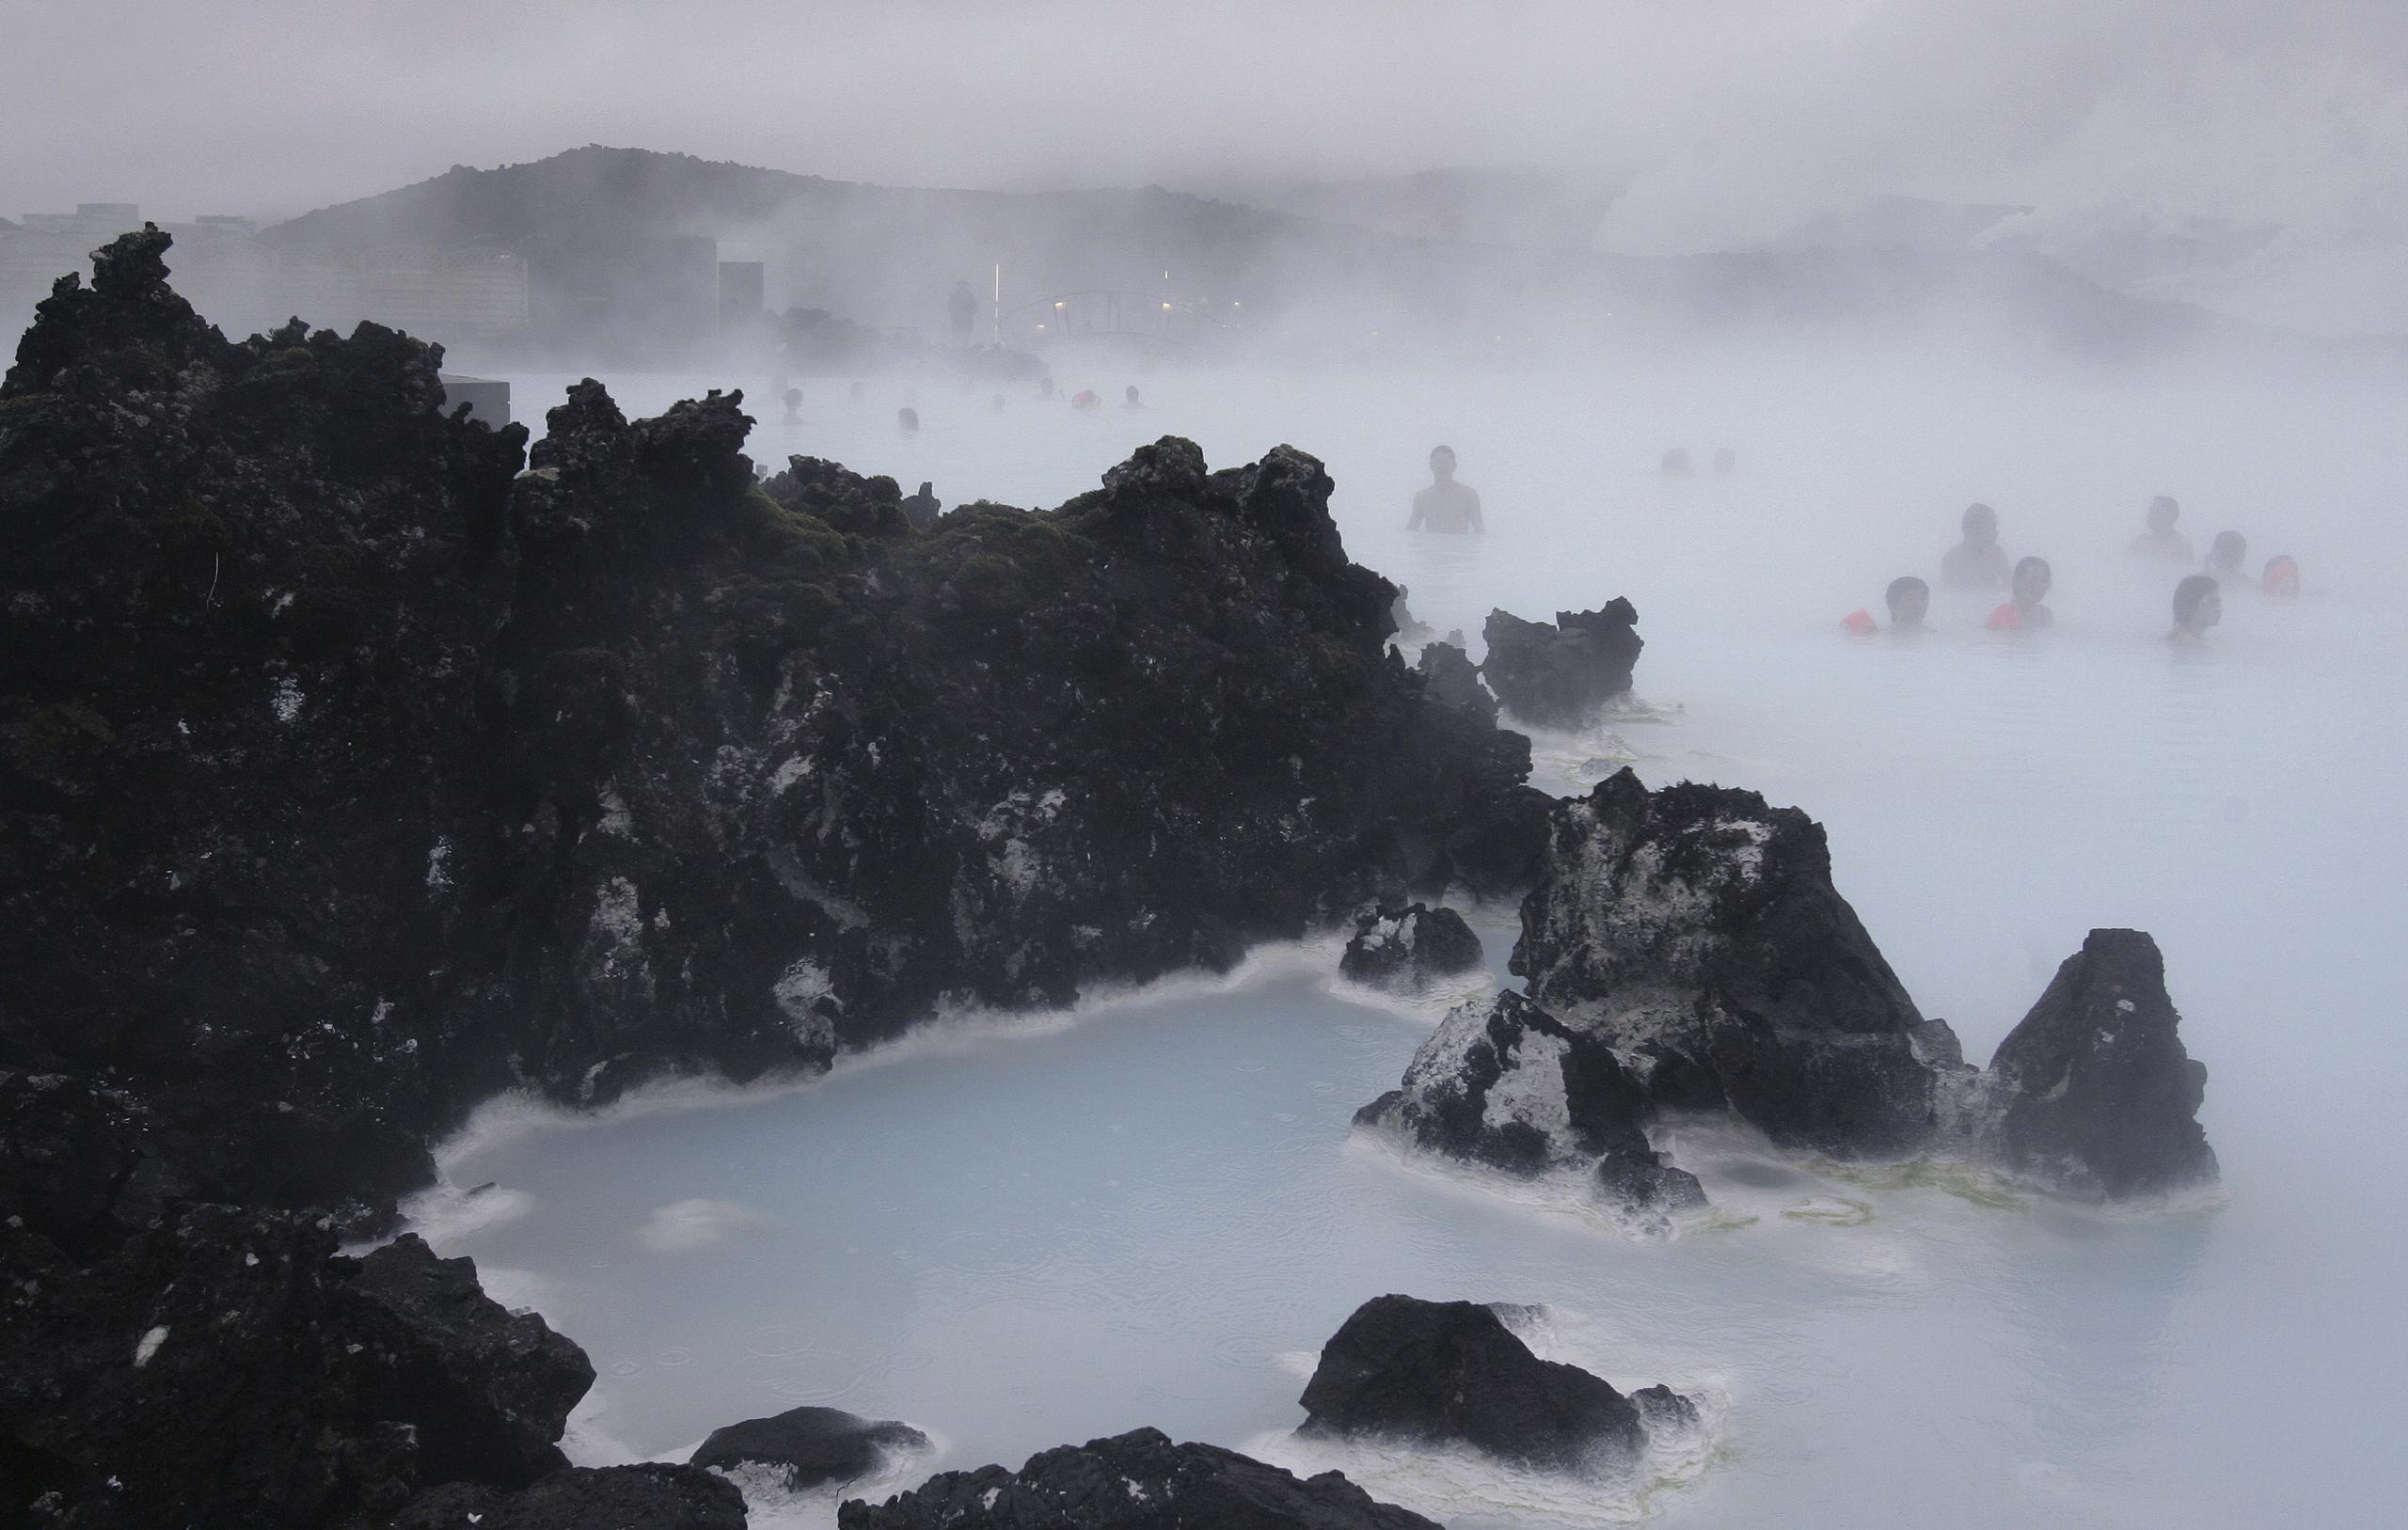 El spa geotérmico Blue Lagoon ha cerrado temporalmente después de que una serie de terremotos hayan puesto en alerta volcánica el extremo suroeste de Islandia, alcanzando un estado de pánico el jueves cuando se produjo un terremoto de magnitud 5.0 poco después de la medianoche. (Foto AP/Kirsty Wigglesworth/Archivo)